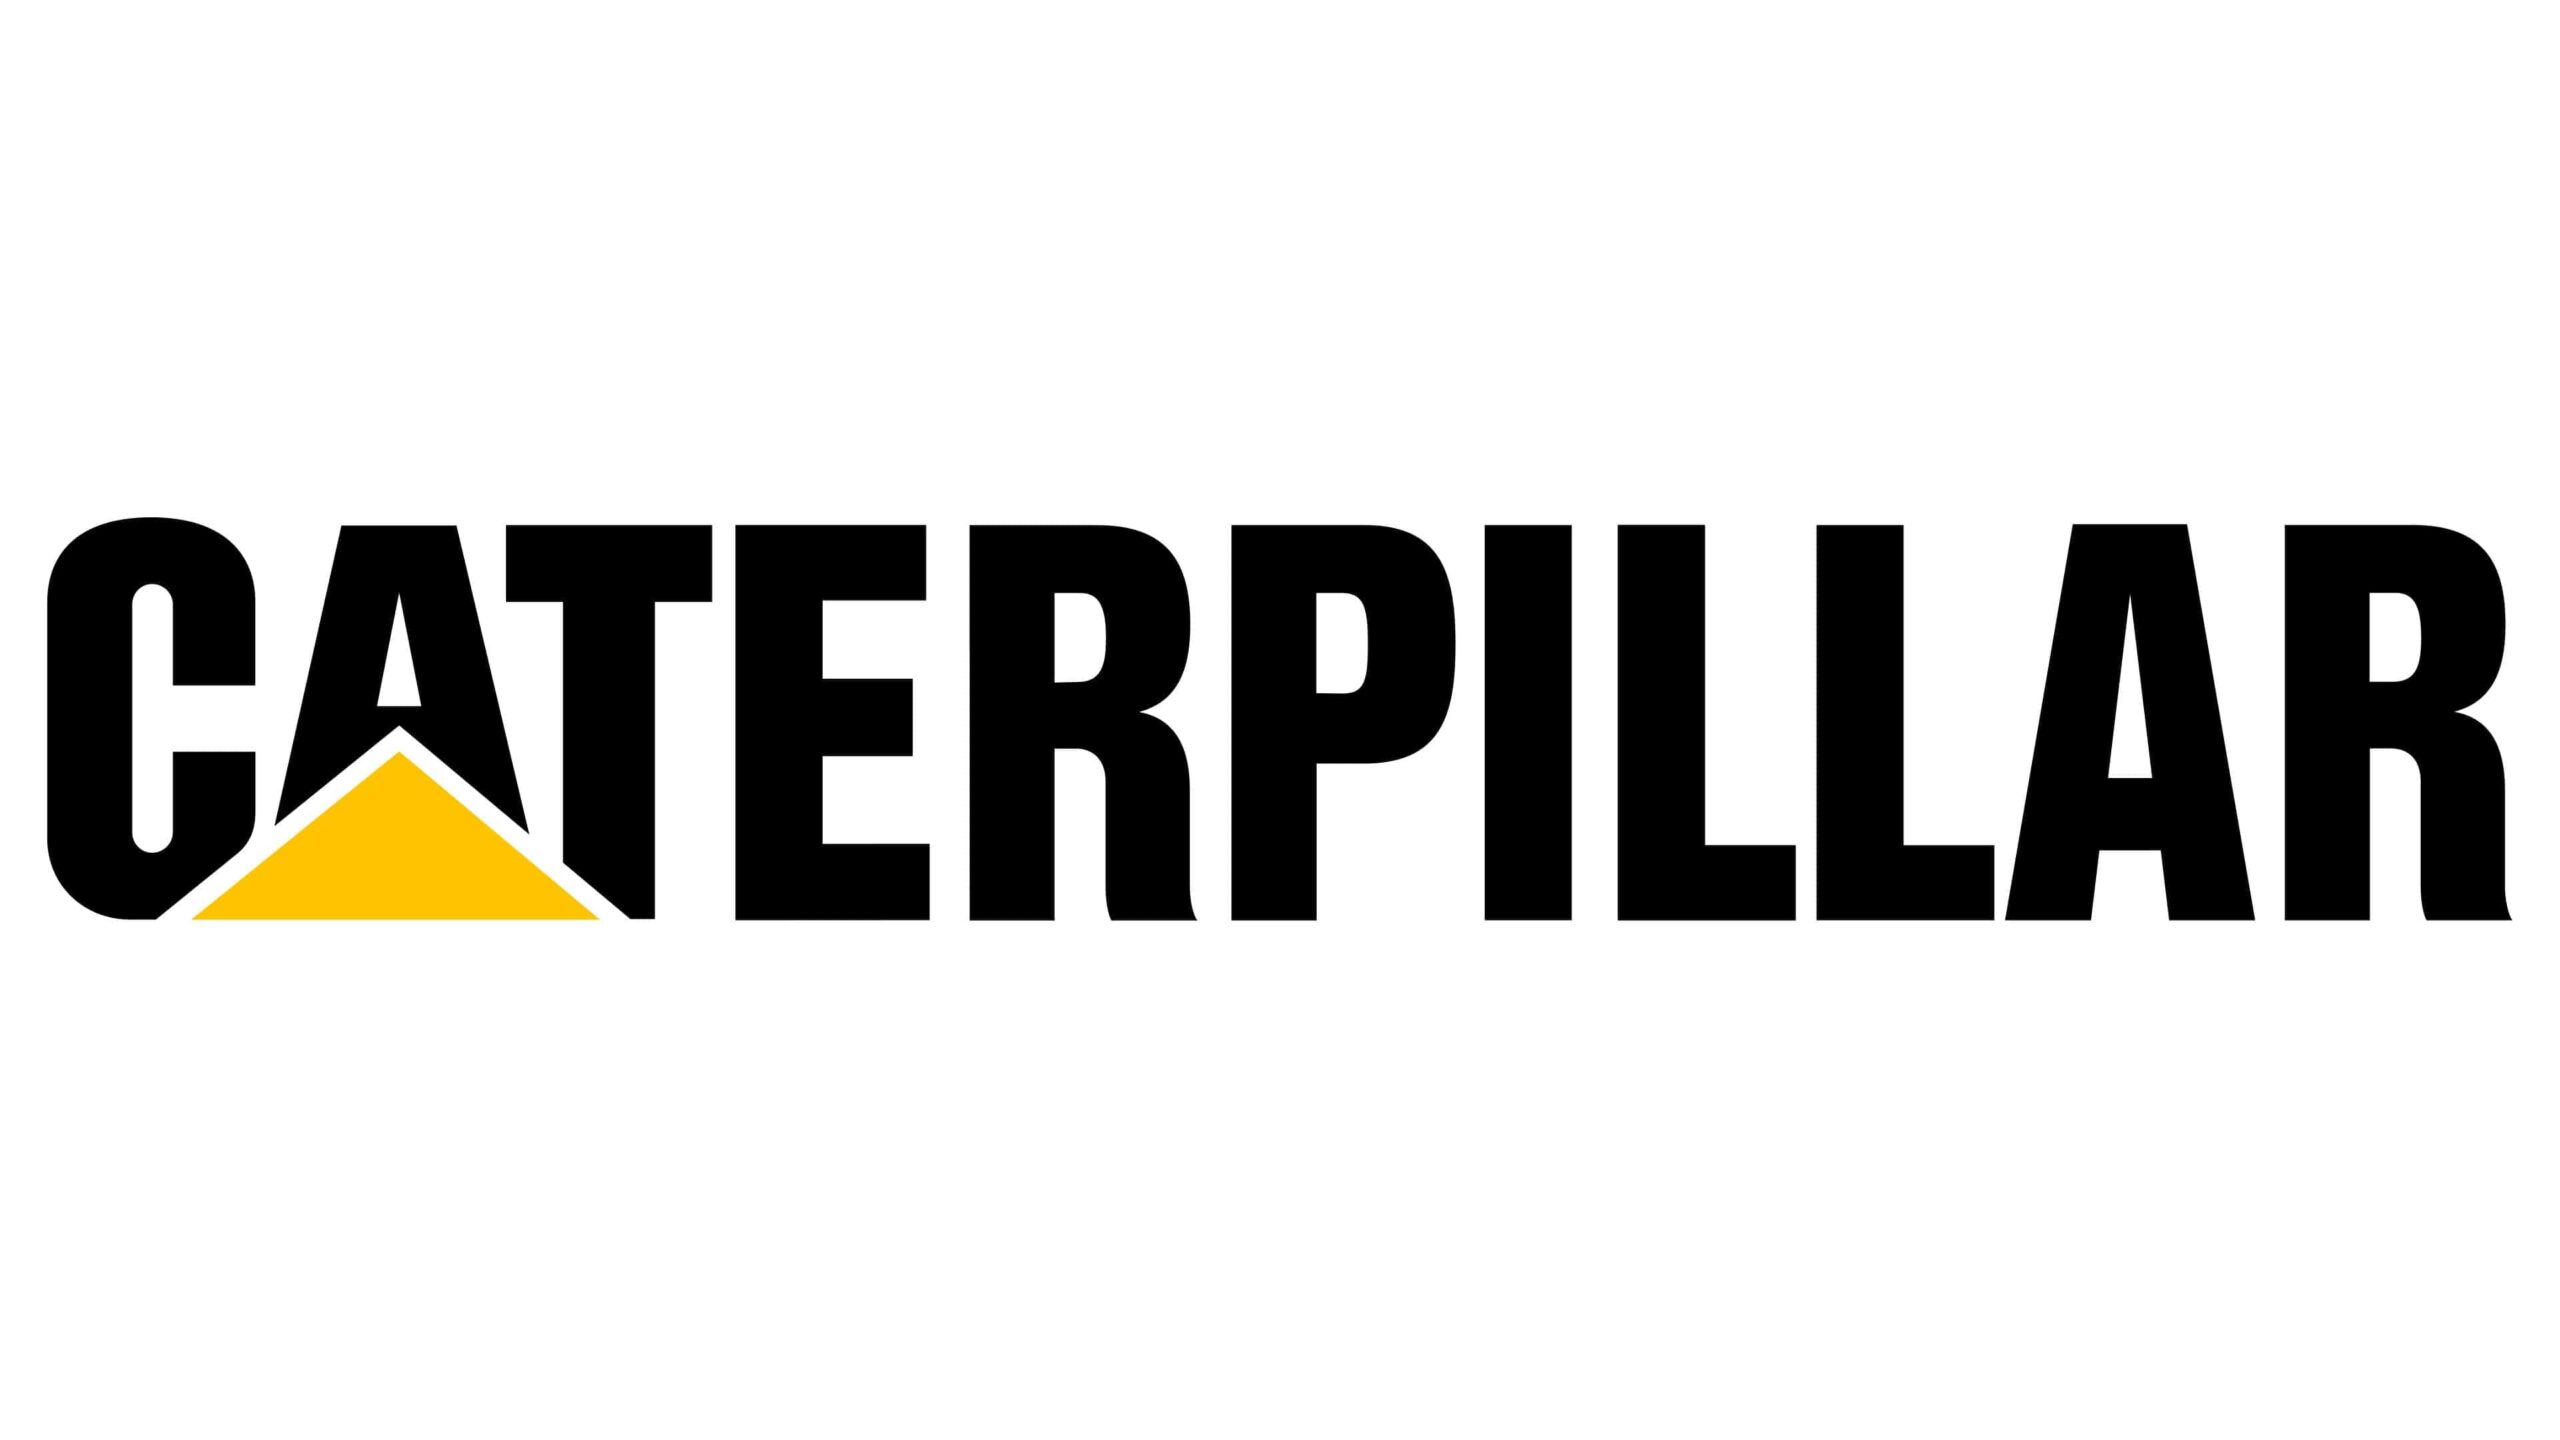 caterpillar logo